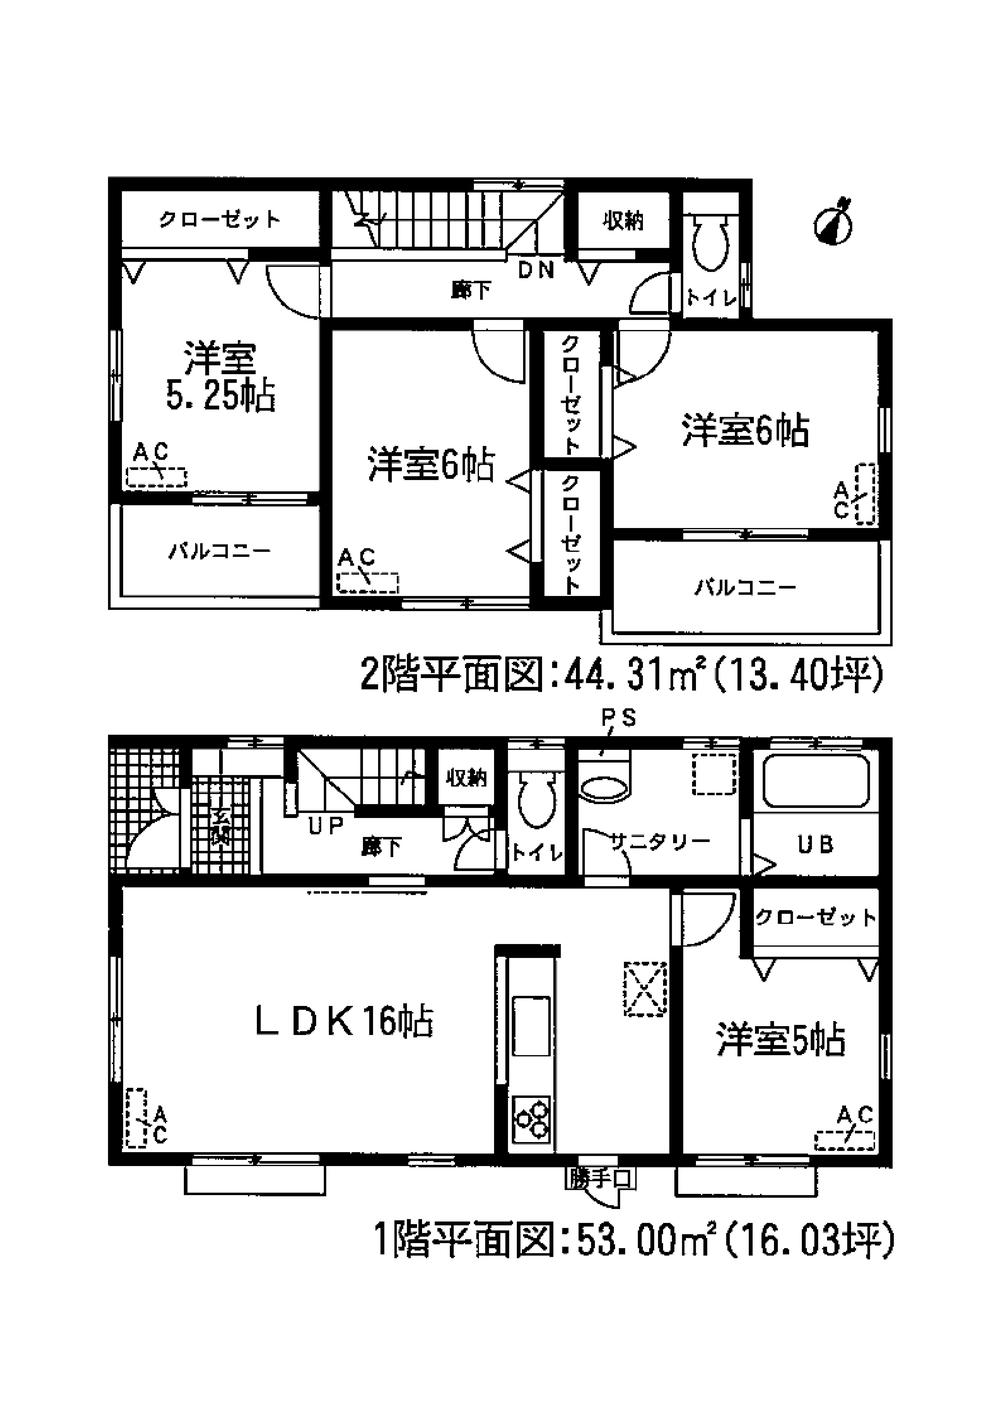 Floor plan. 28.8 million yen, 4LDK, Land area 137.61 sq m , Building area 97.31 sq m